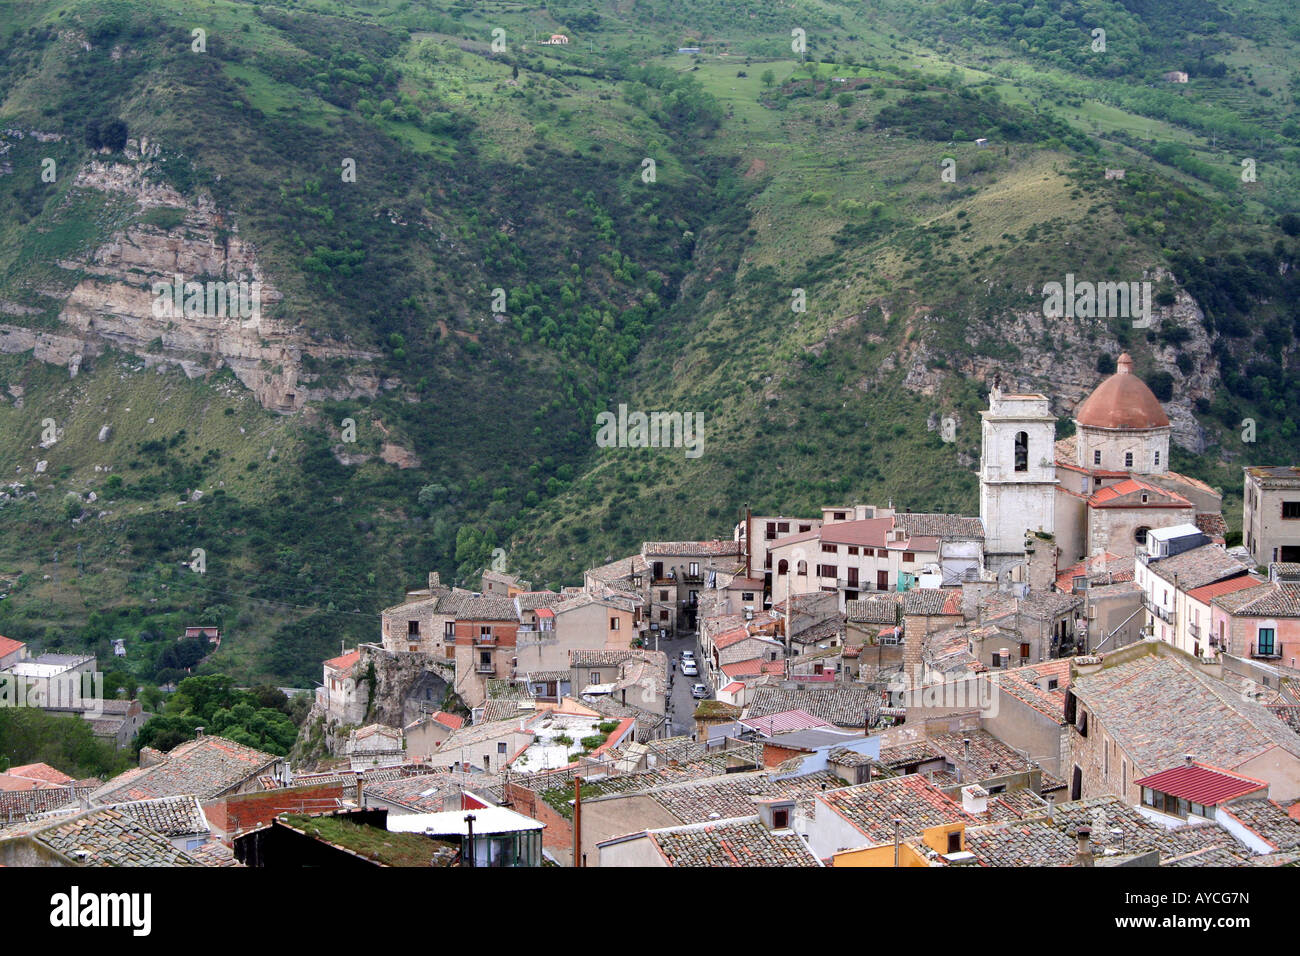 La encantadora ciudad de Petralia Sottana en Sicilia de la piedra caliza y el parque de las Madonie montañas protegidas Foto de stock